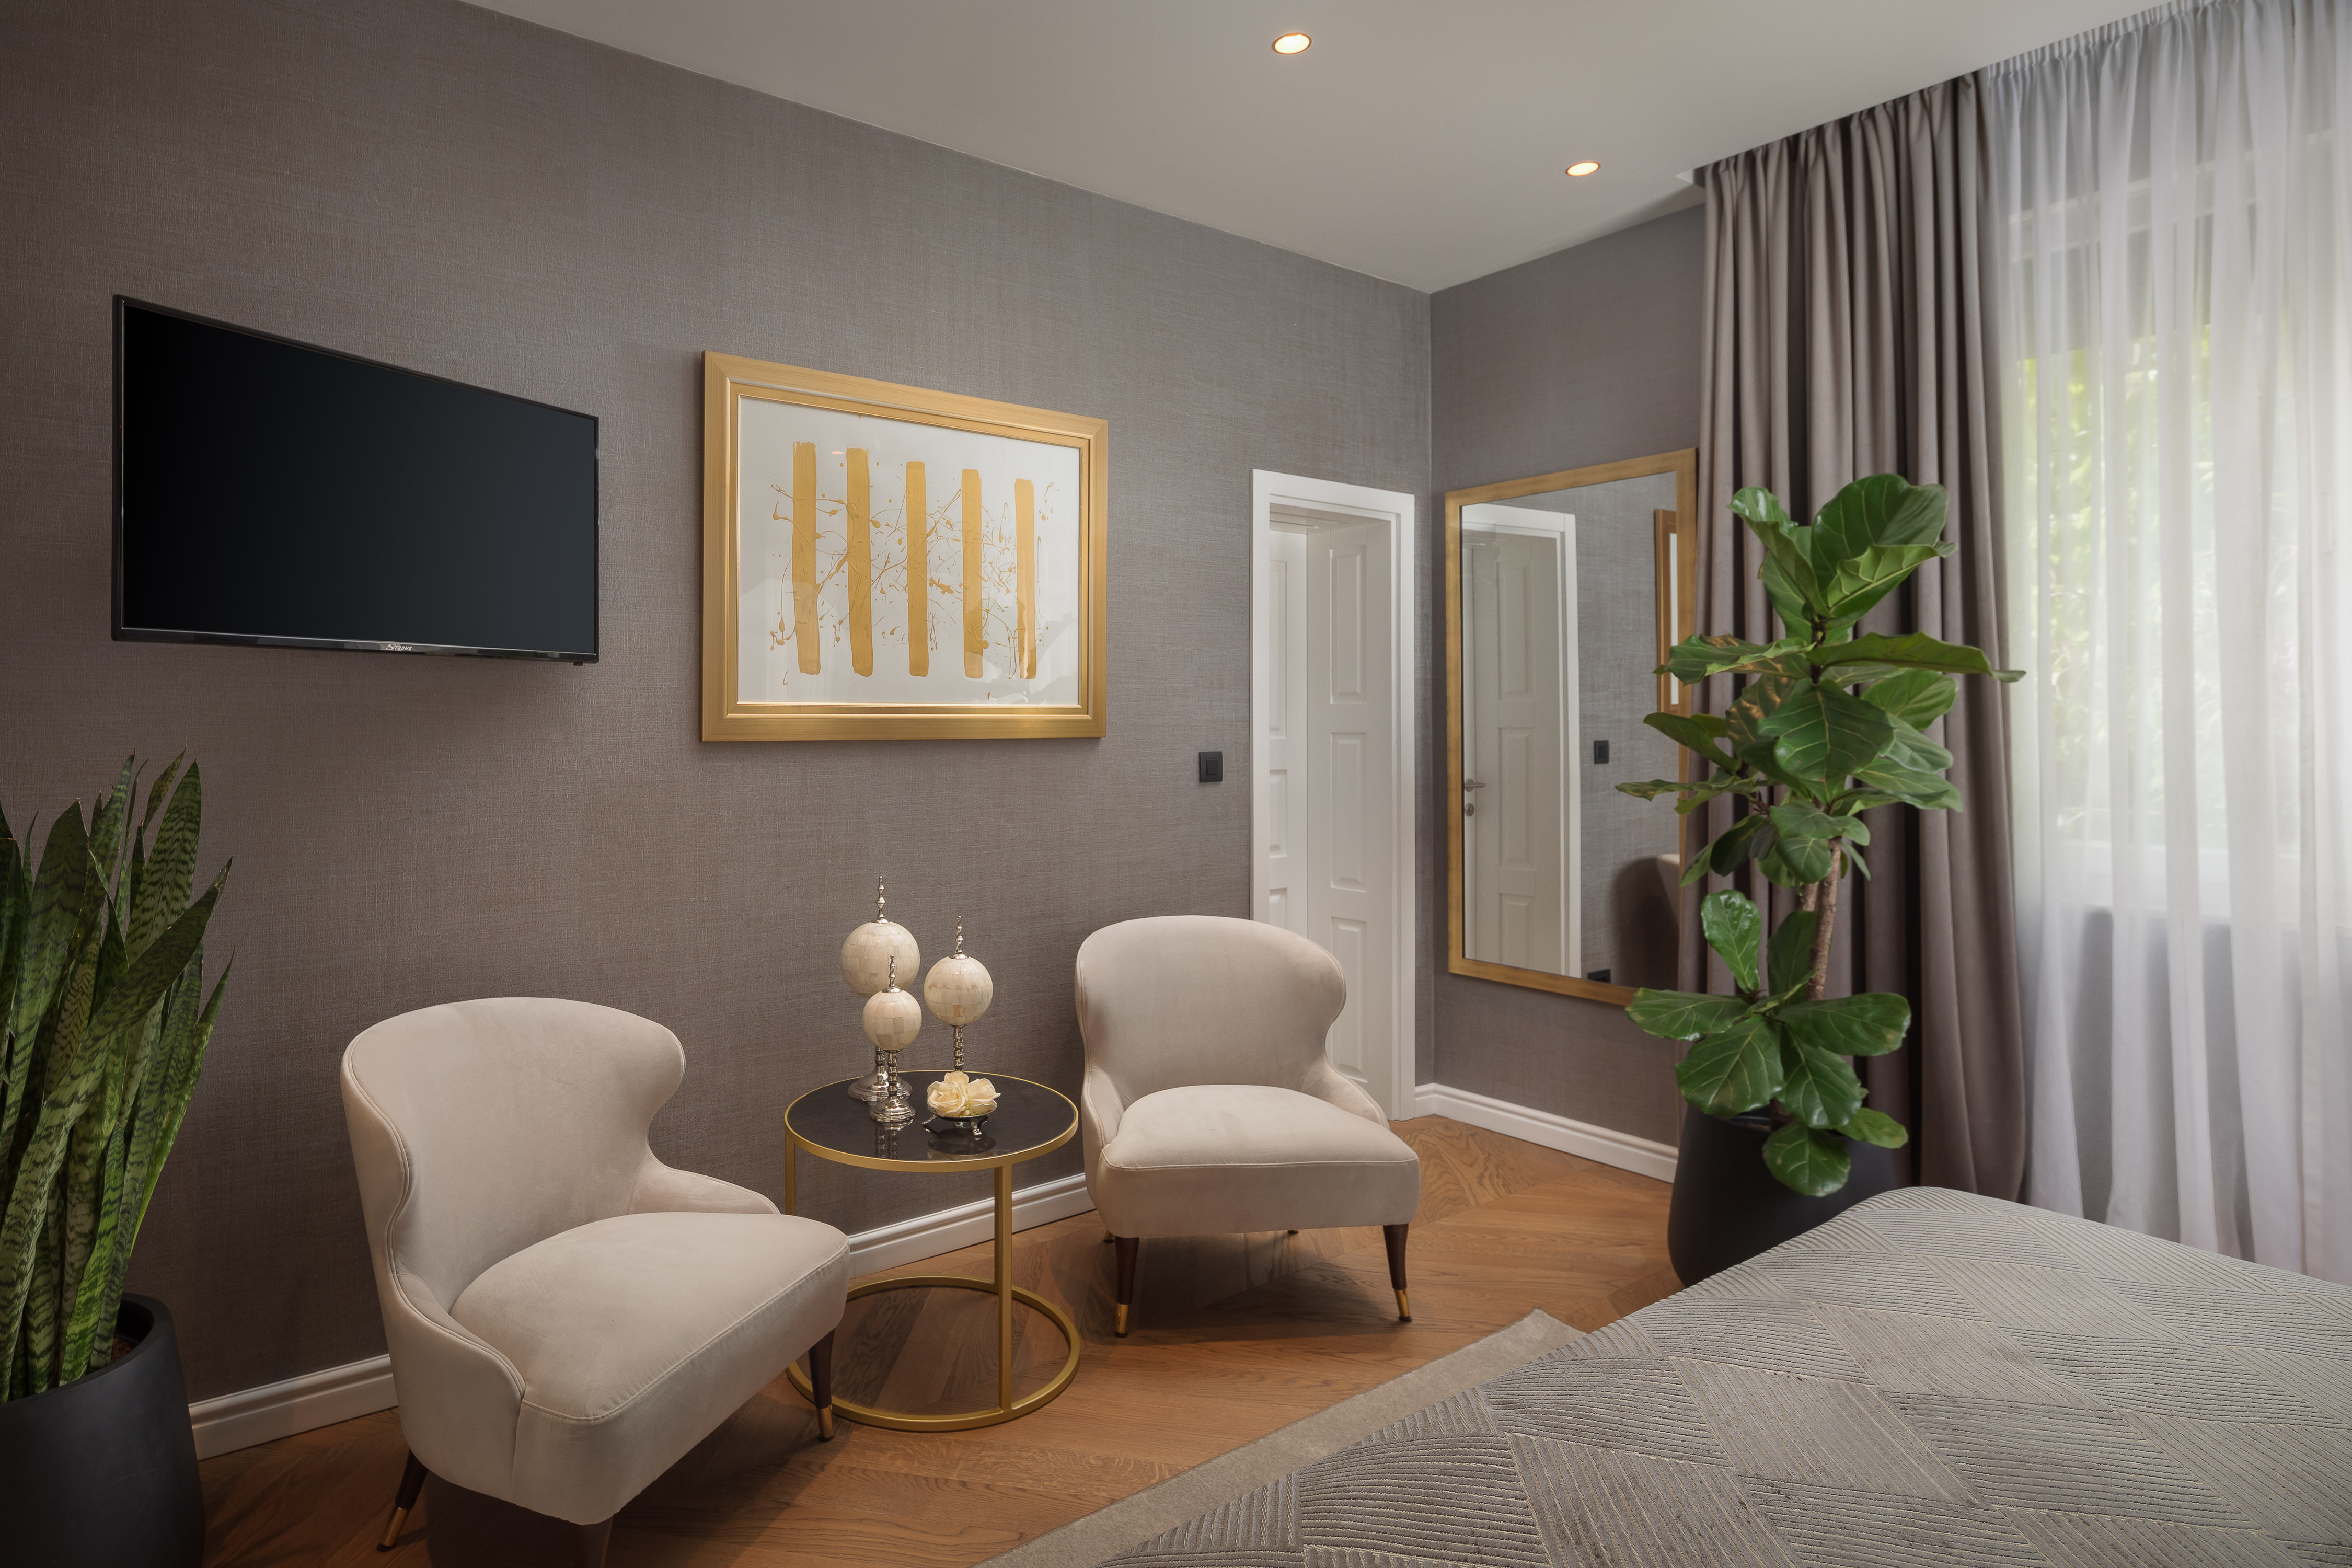 Five elements luxury rooms enSplit